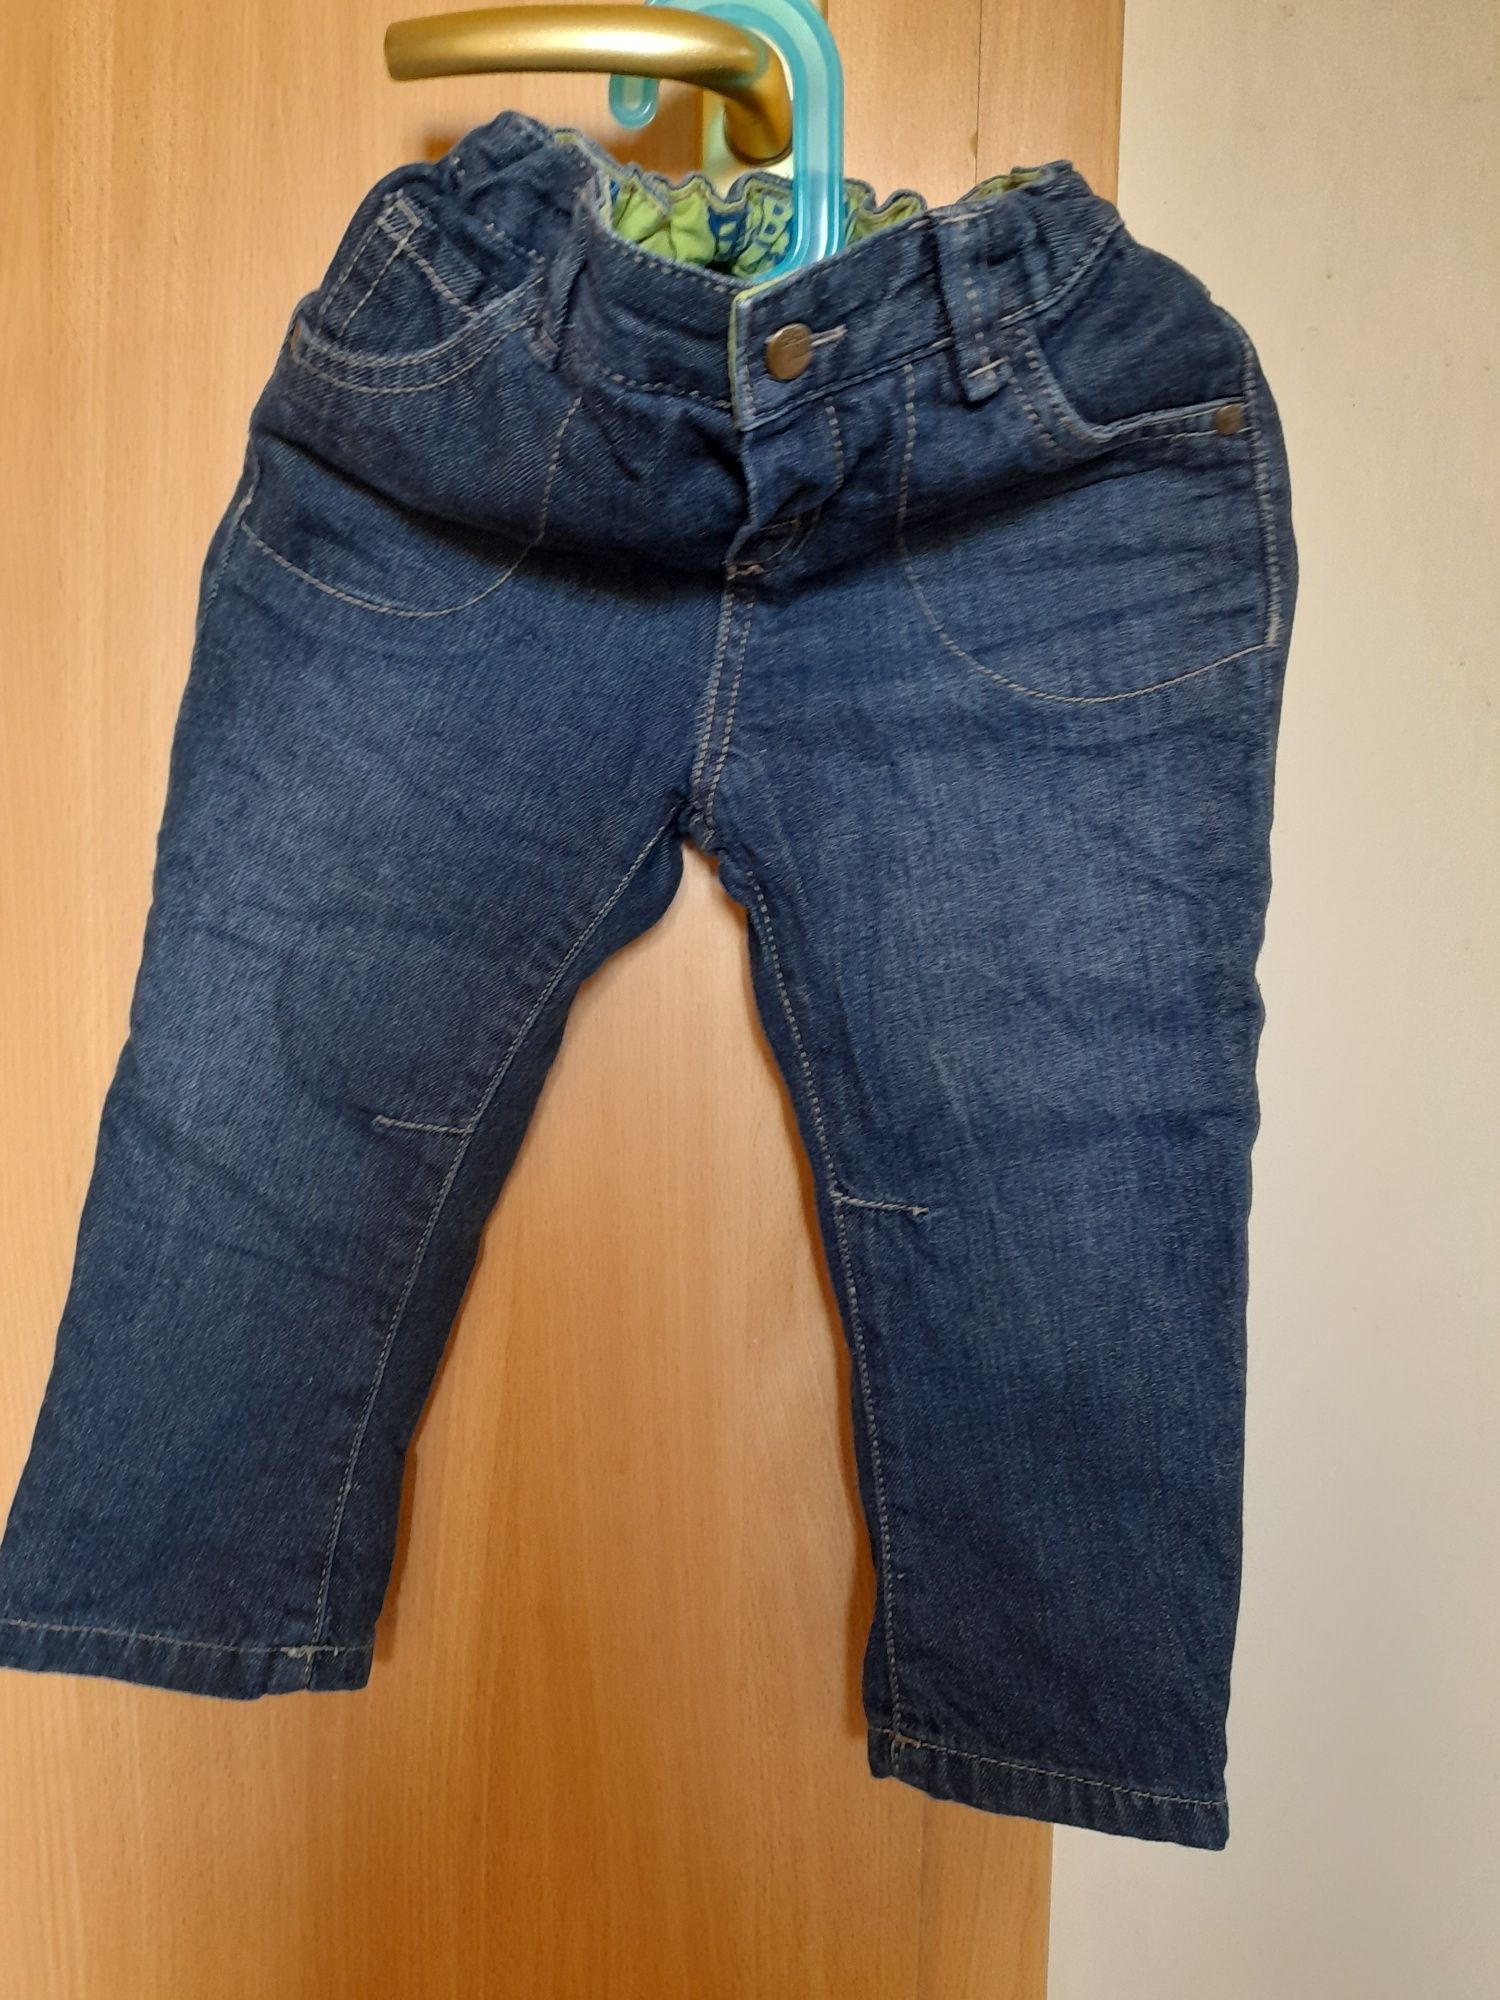 Spodnie jeansowa granatowe ocieplana podszewka rozmiar 92